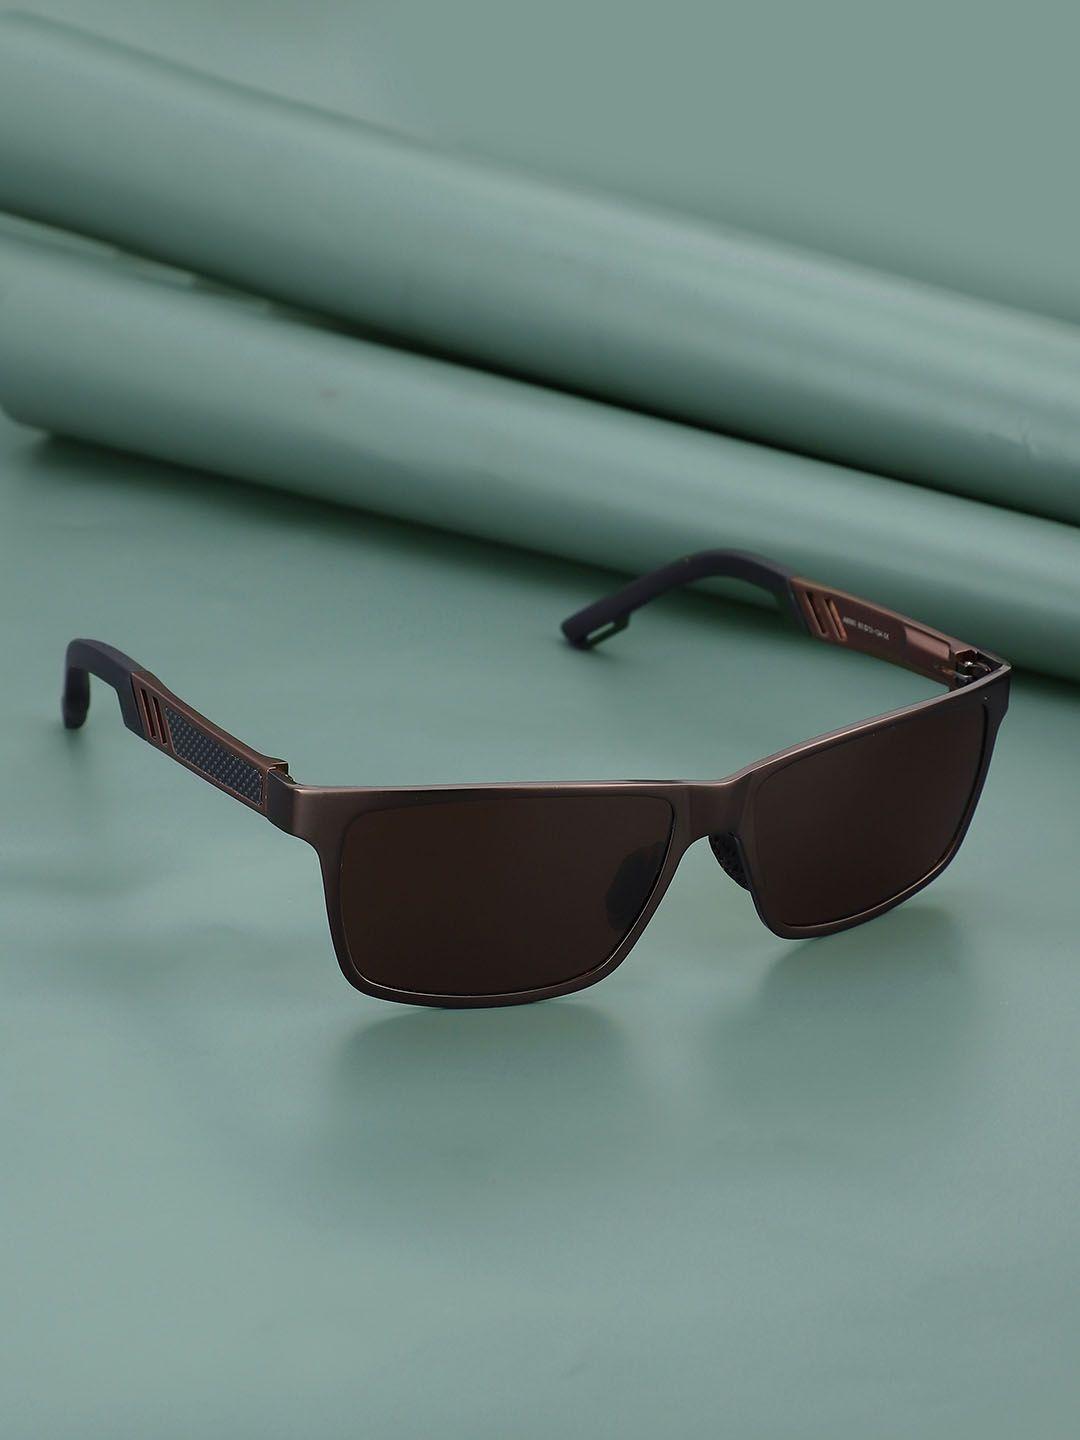 carlton london premium men square sunglasses with polarised & uv protected lens clsm108